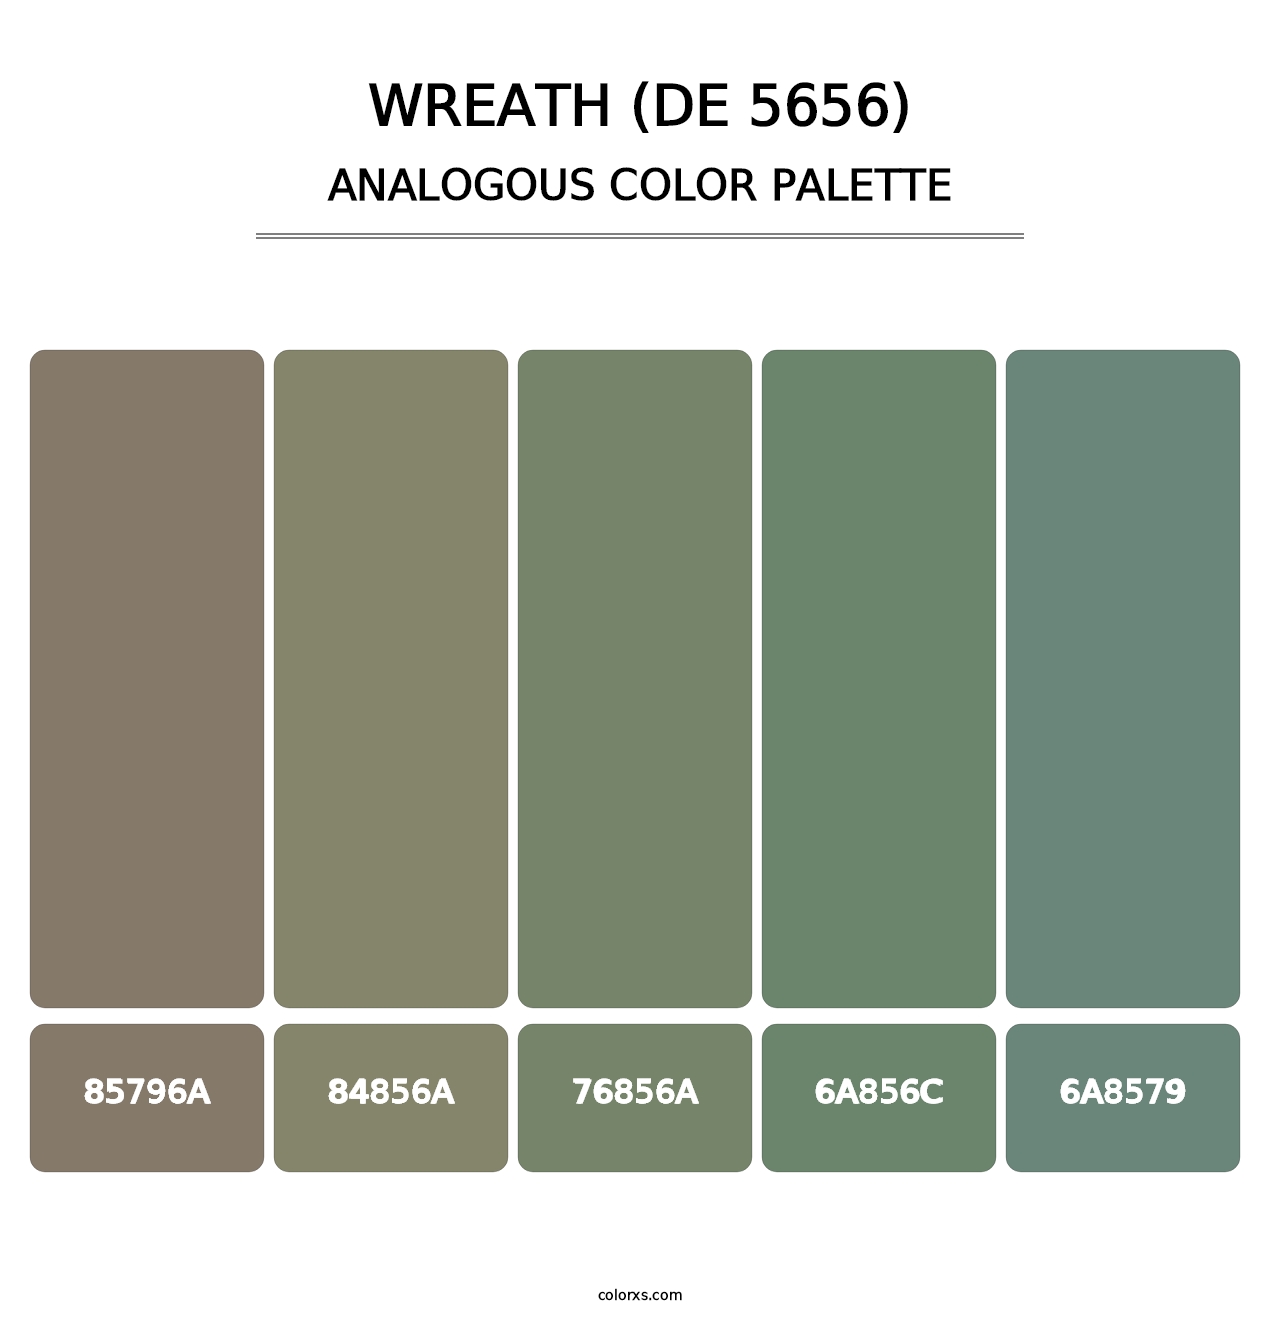 Wreath (DE 5656) - Analogous Color Palette